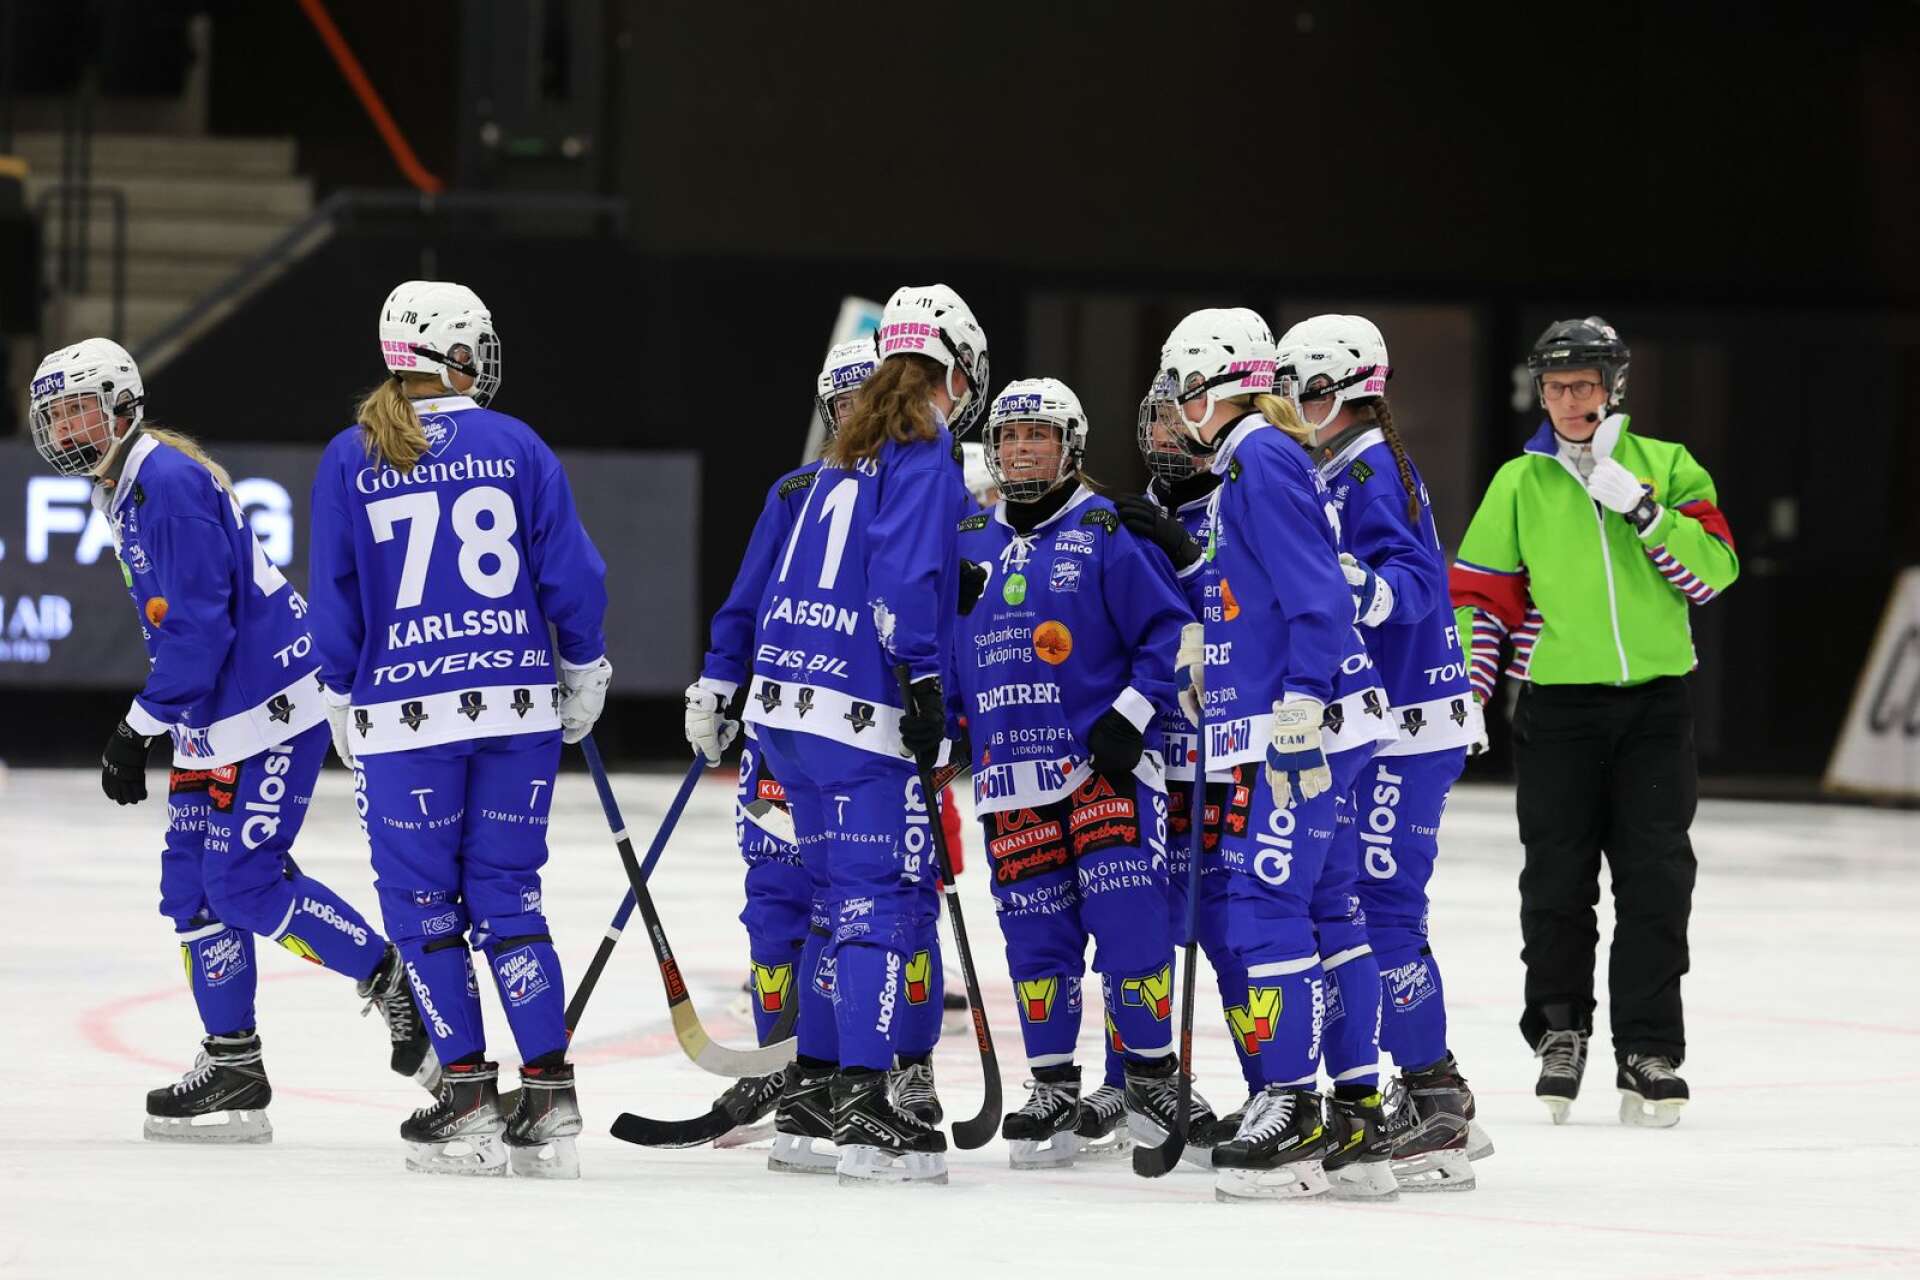 Villa vann den första SM-semifinalen borta mot Skirö med 5-2.